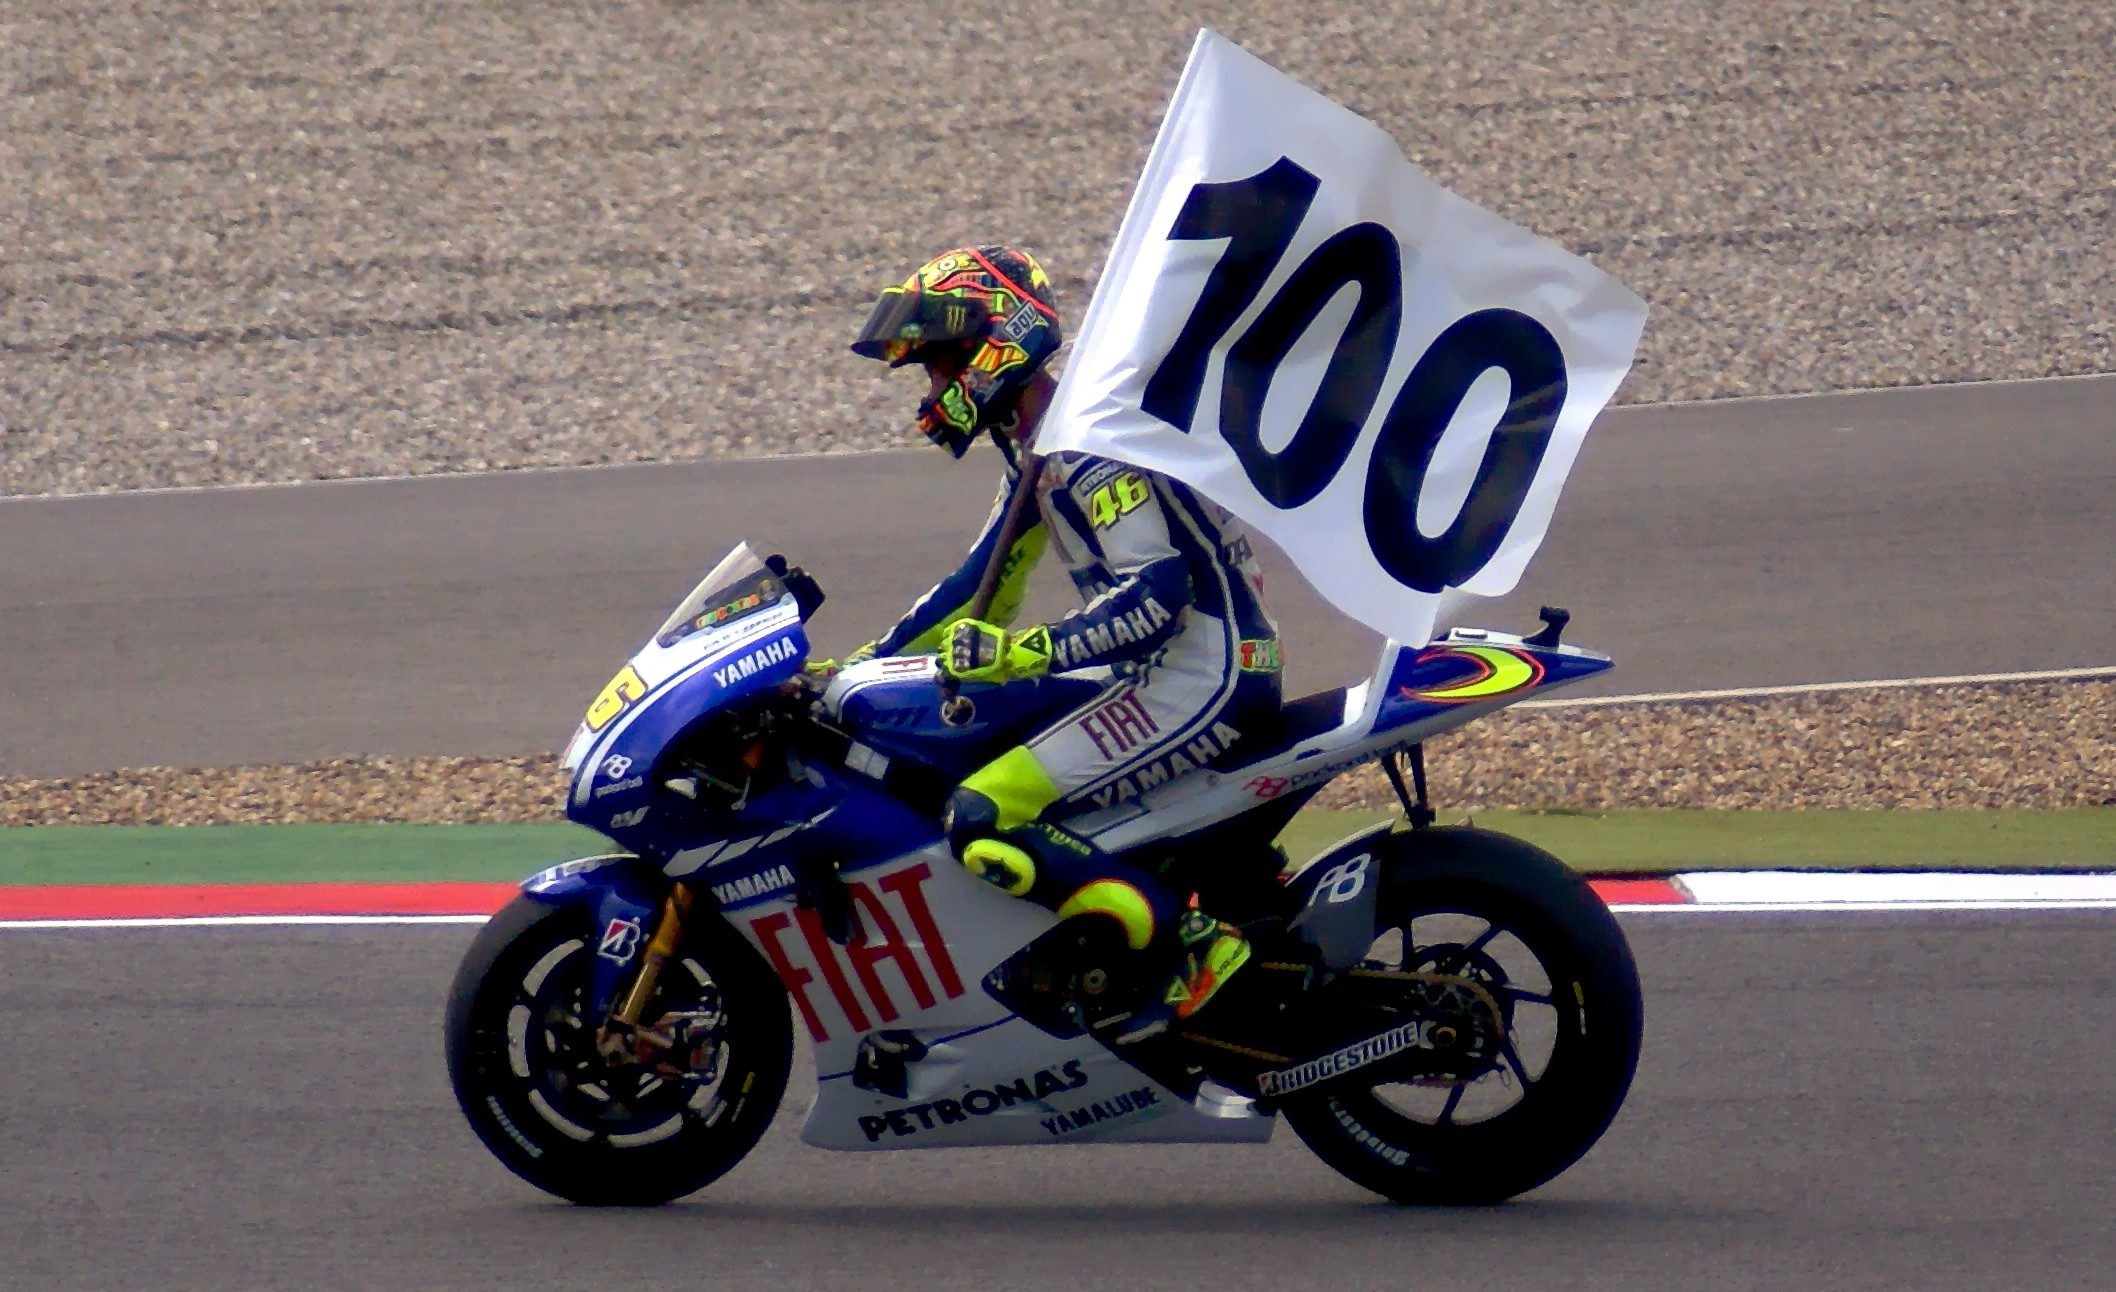 Valentino Rossi - 100th win